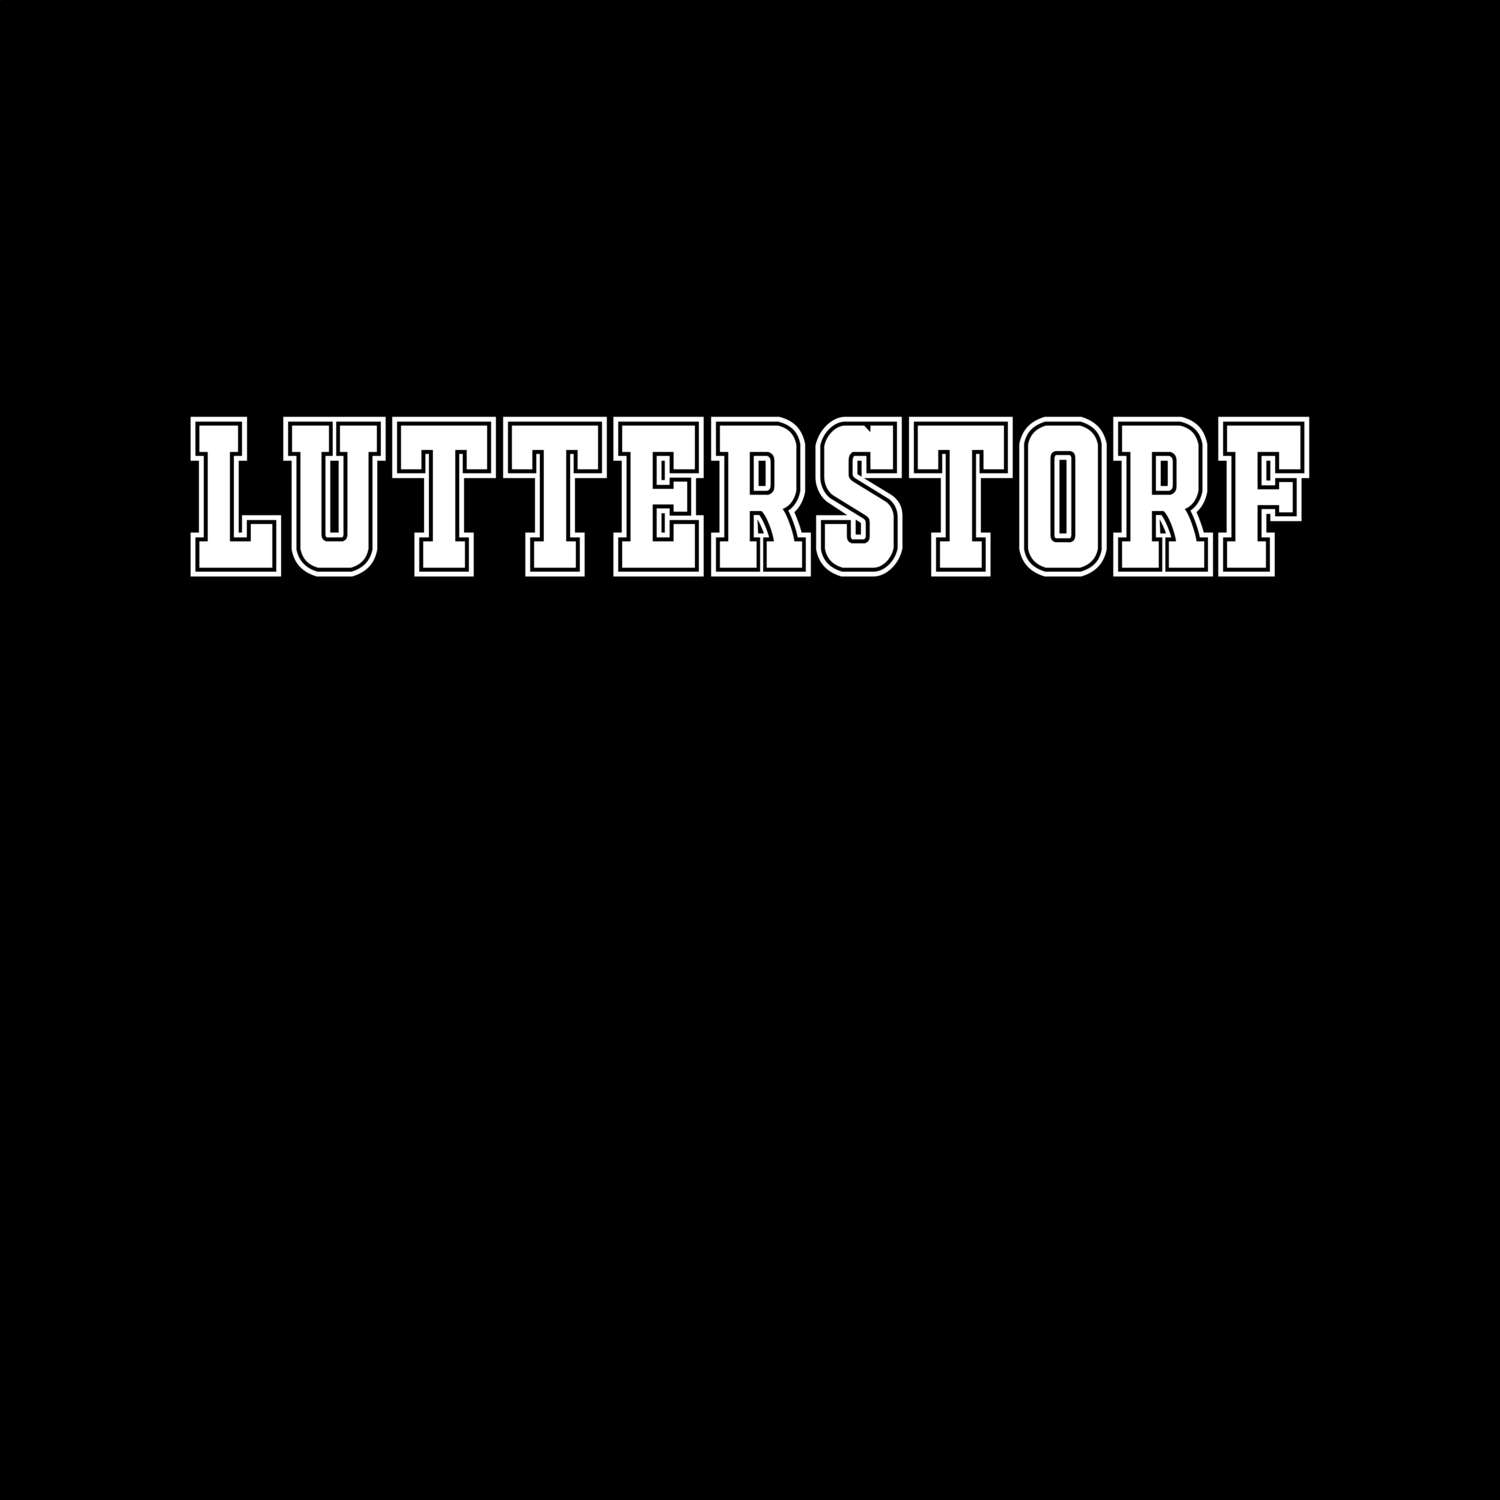 Lutterstorf T-Shirt »Classic«